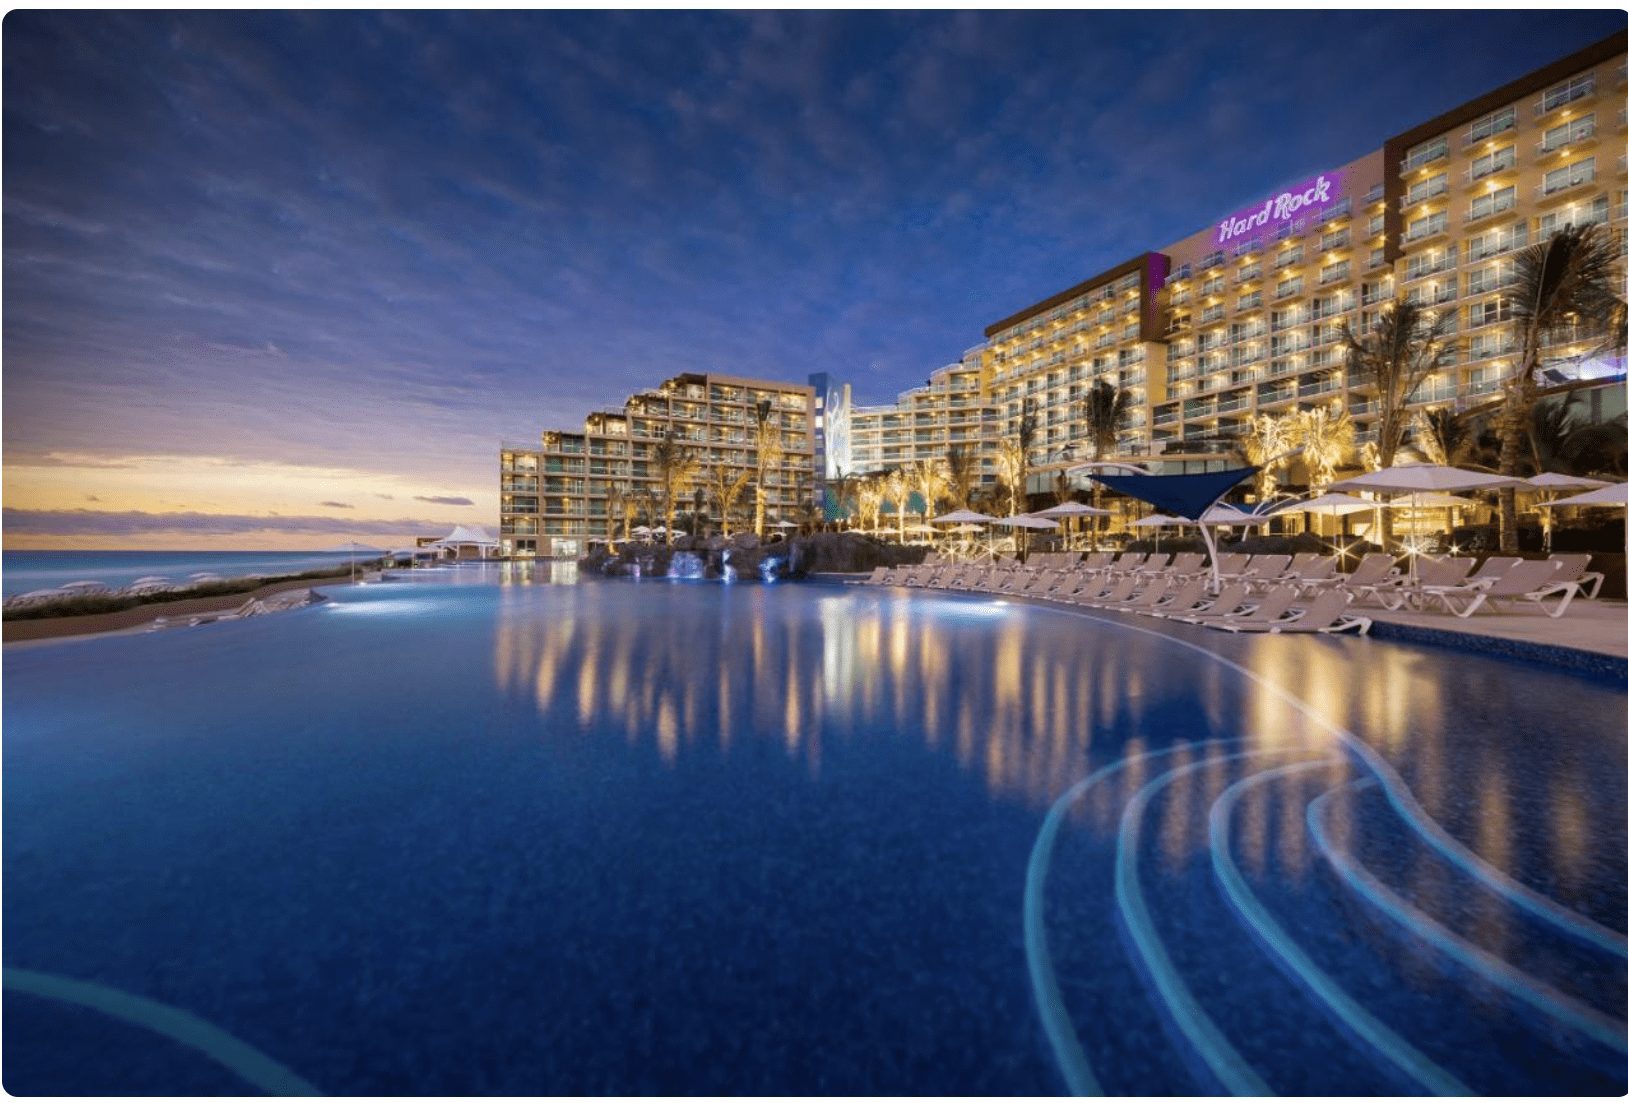 Hard Rock Resorts Cancun